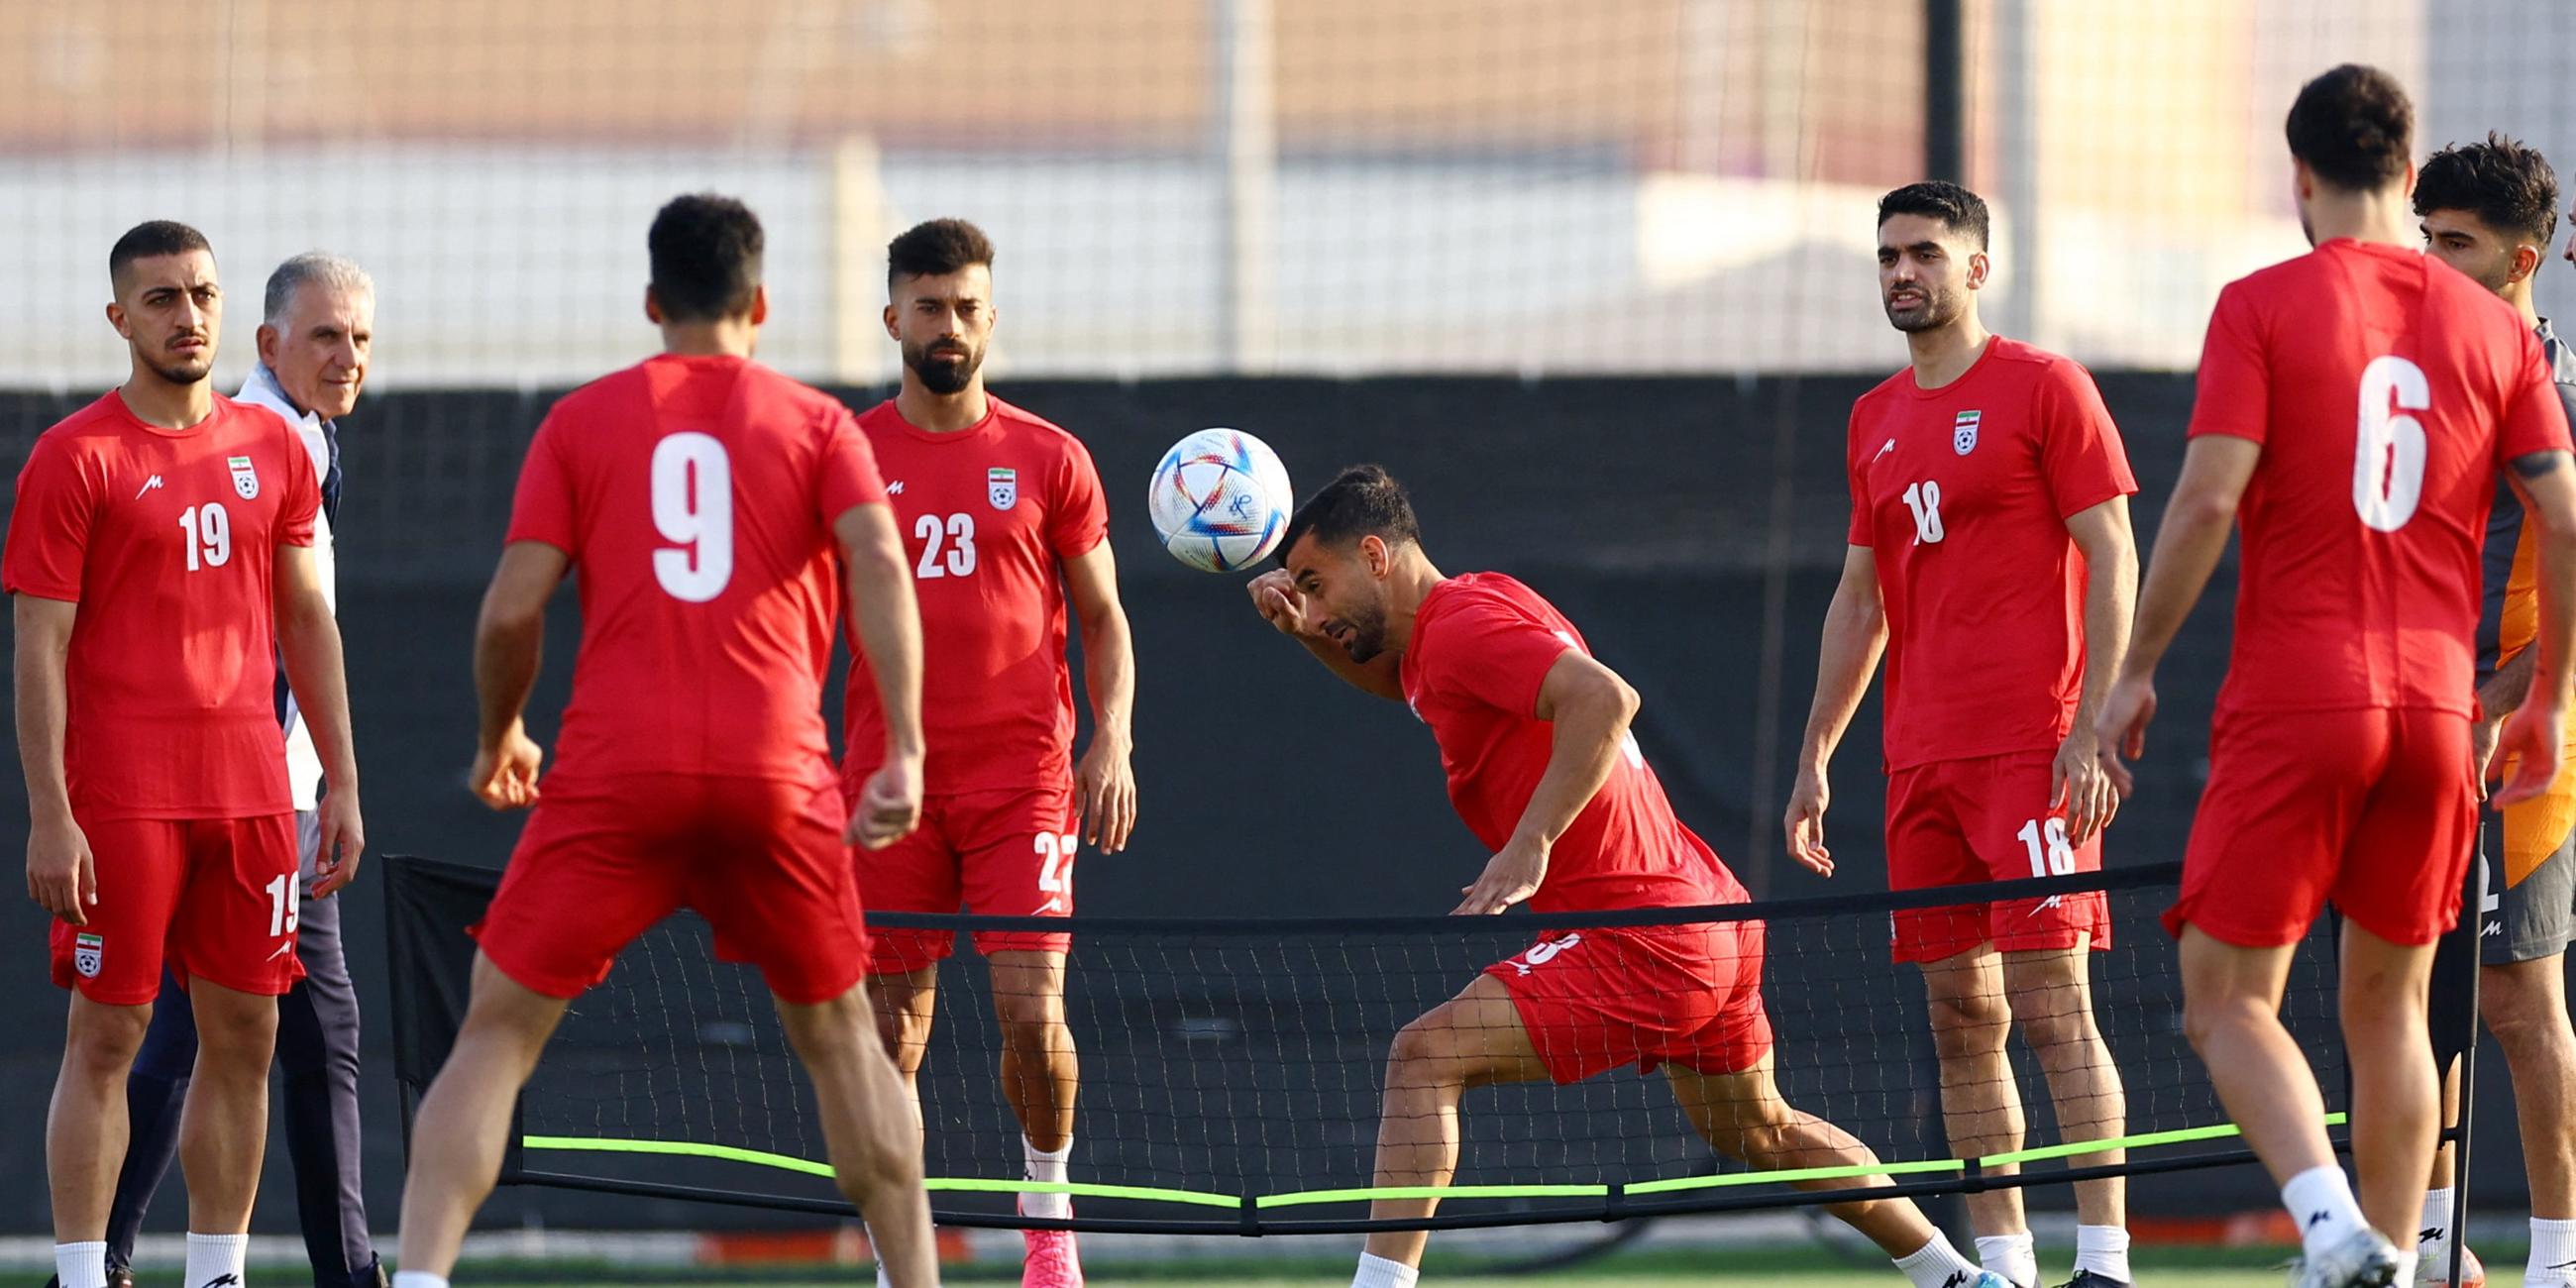 WM 2022: Die iranische Mannschaft beim Training. In der Mitte Ehsan Hajisafi.